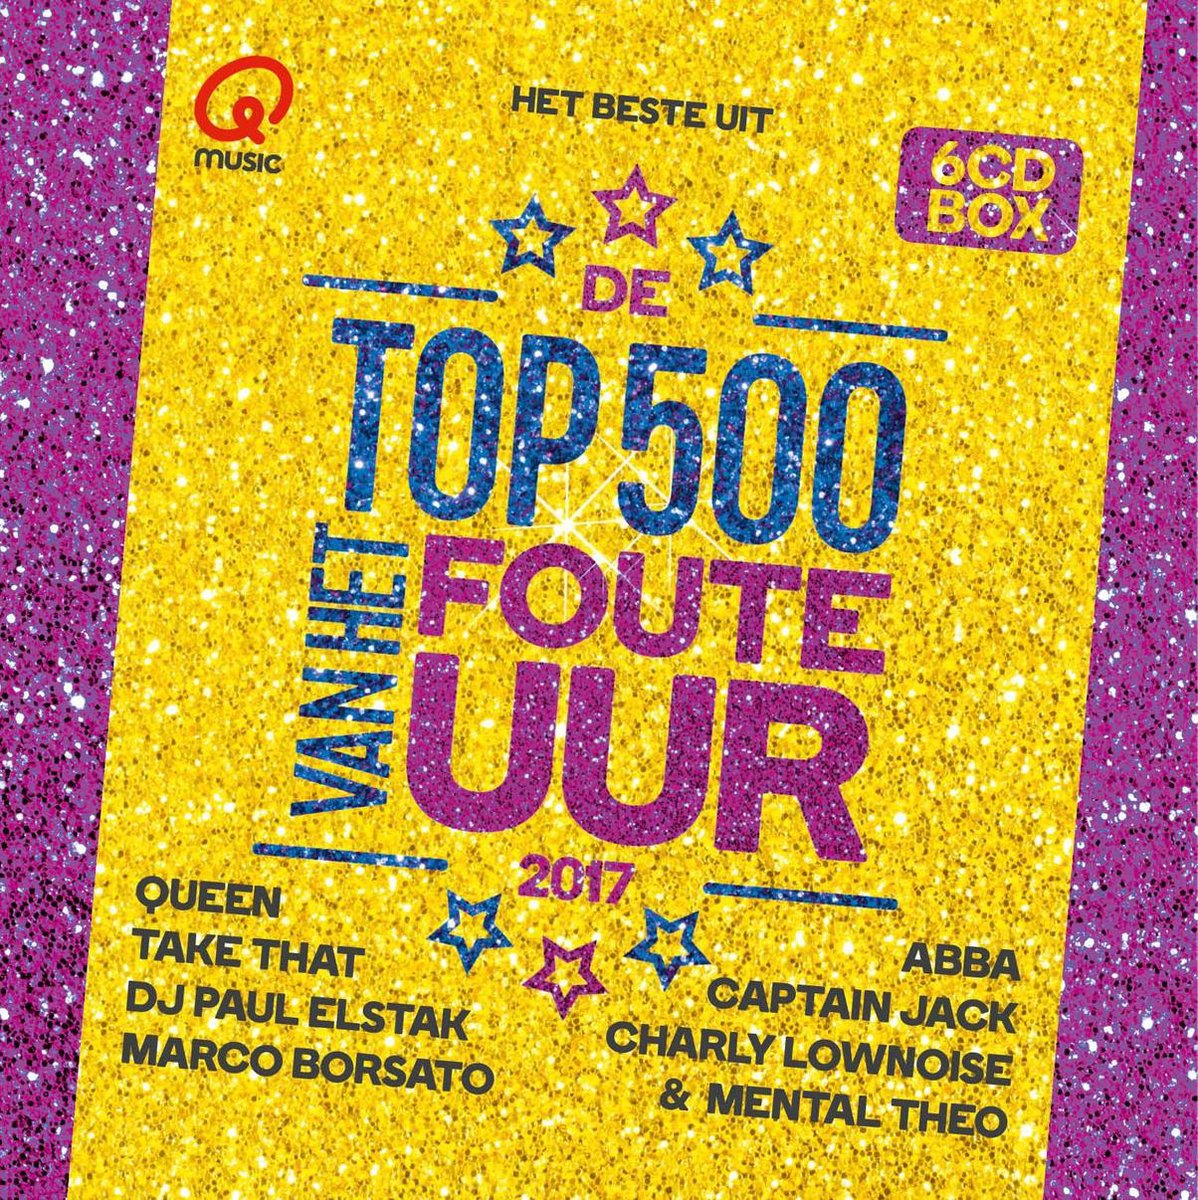 Qmusic: Het Beste Uit De Top 500 Van Het Foute Uur - 2017 - various artists